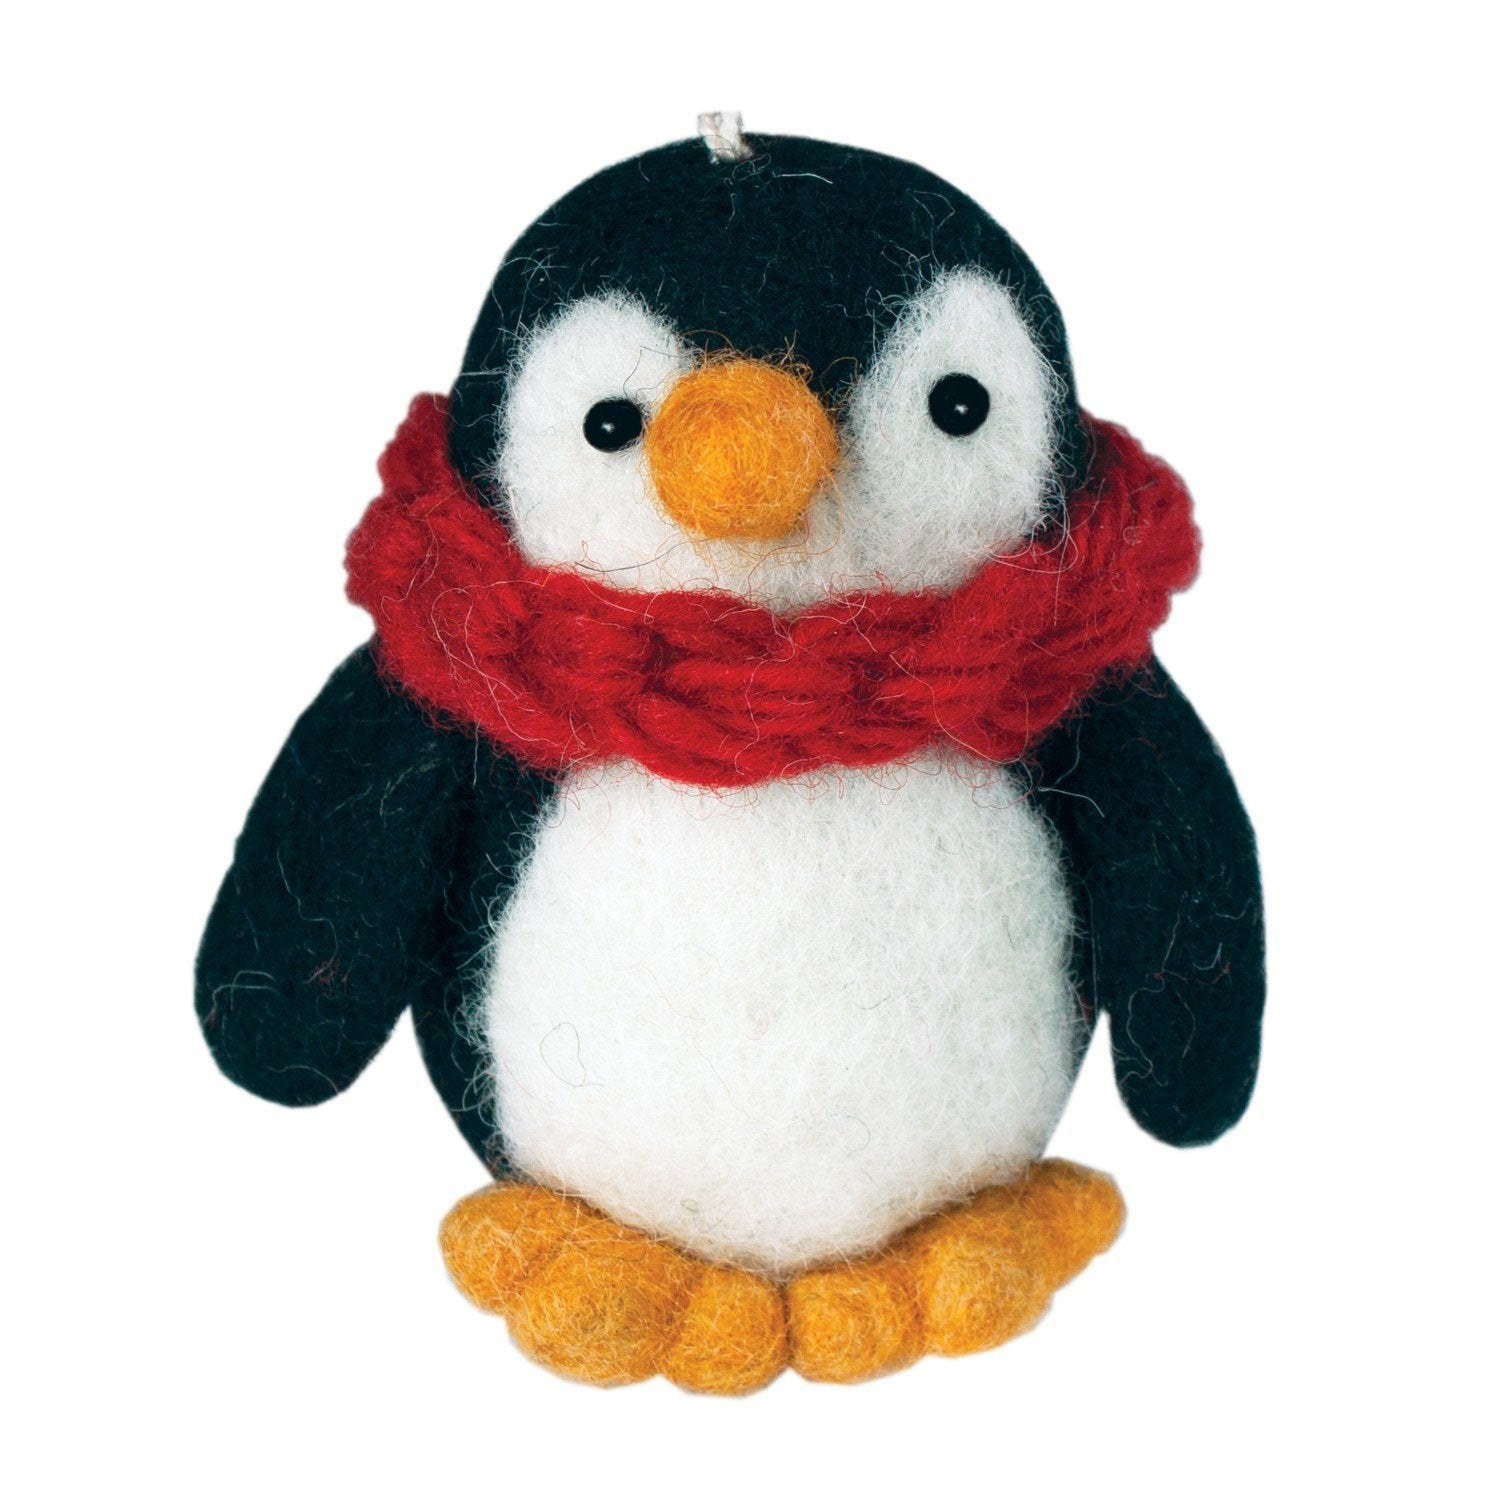 Felt Ornament - Penguin